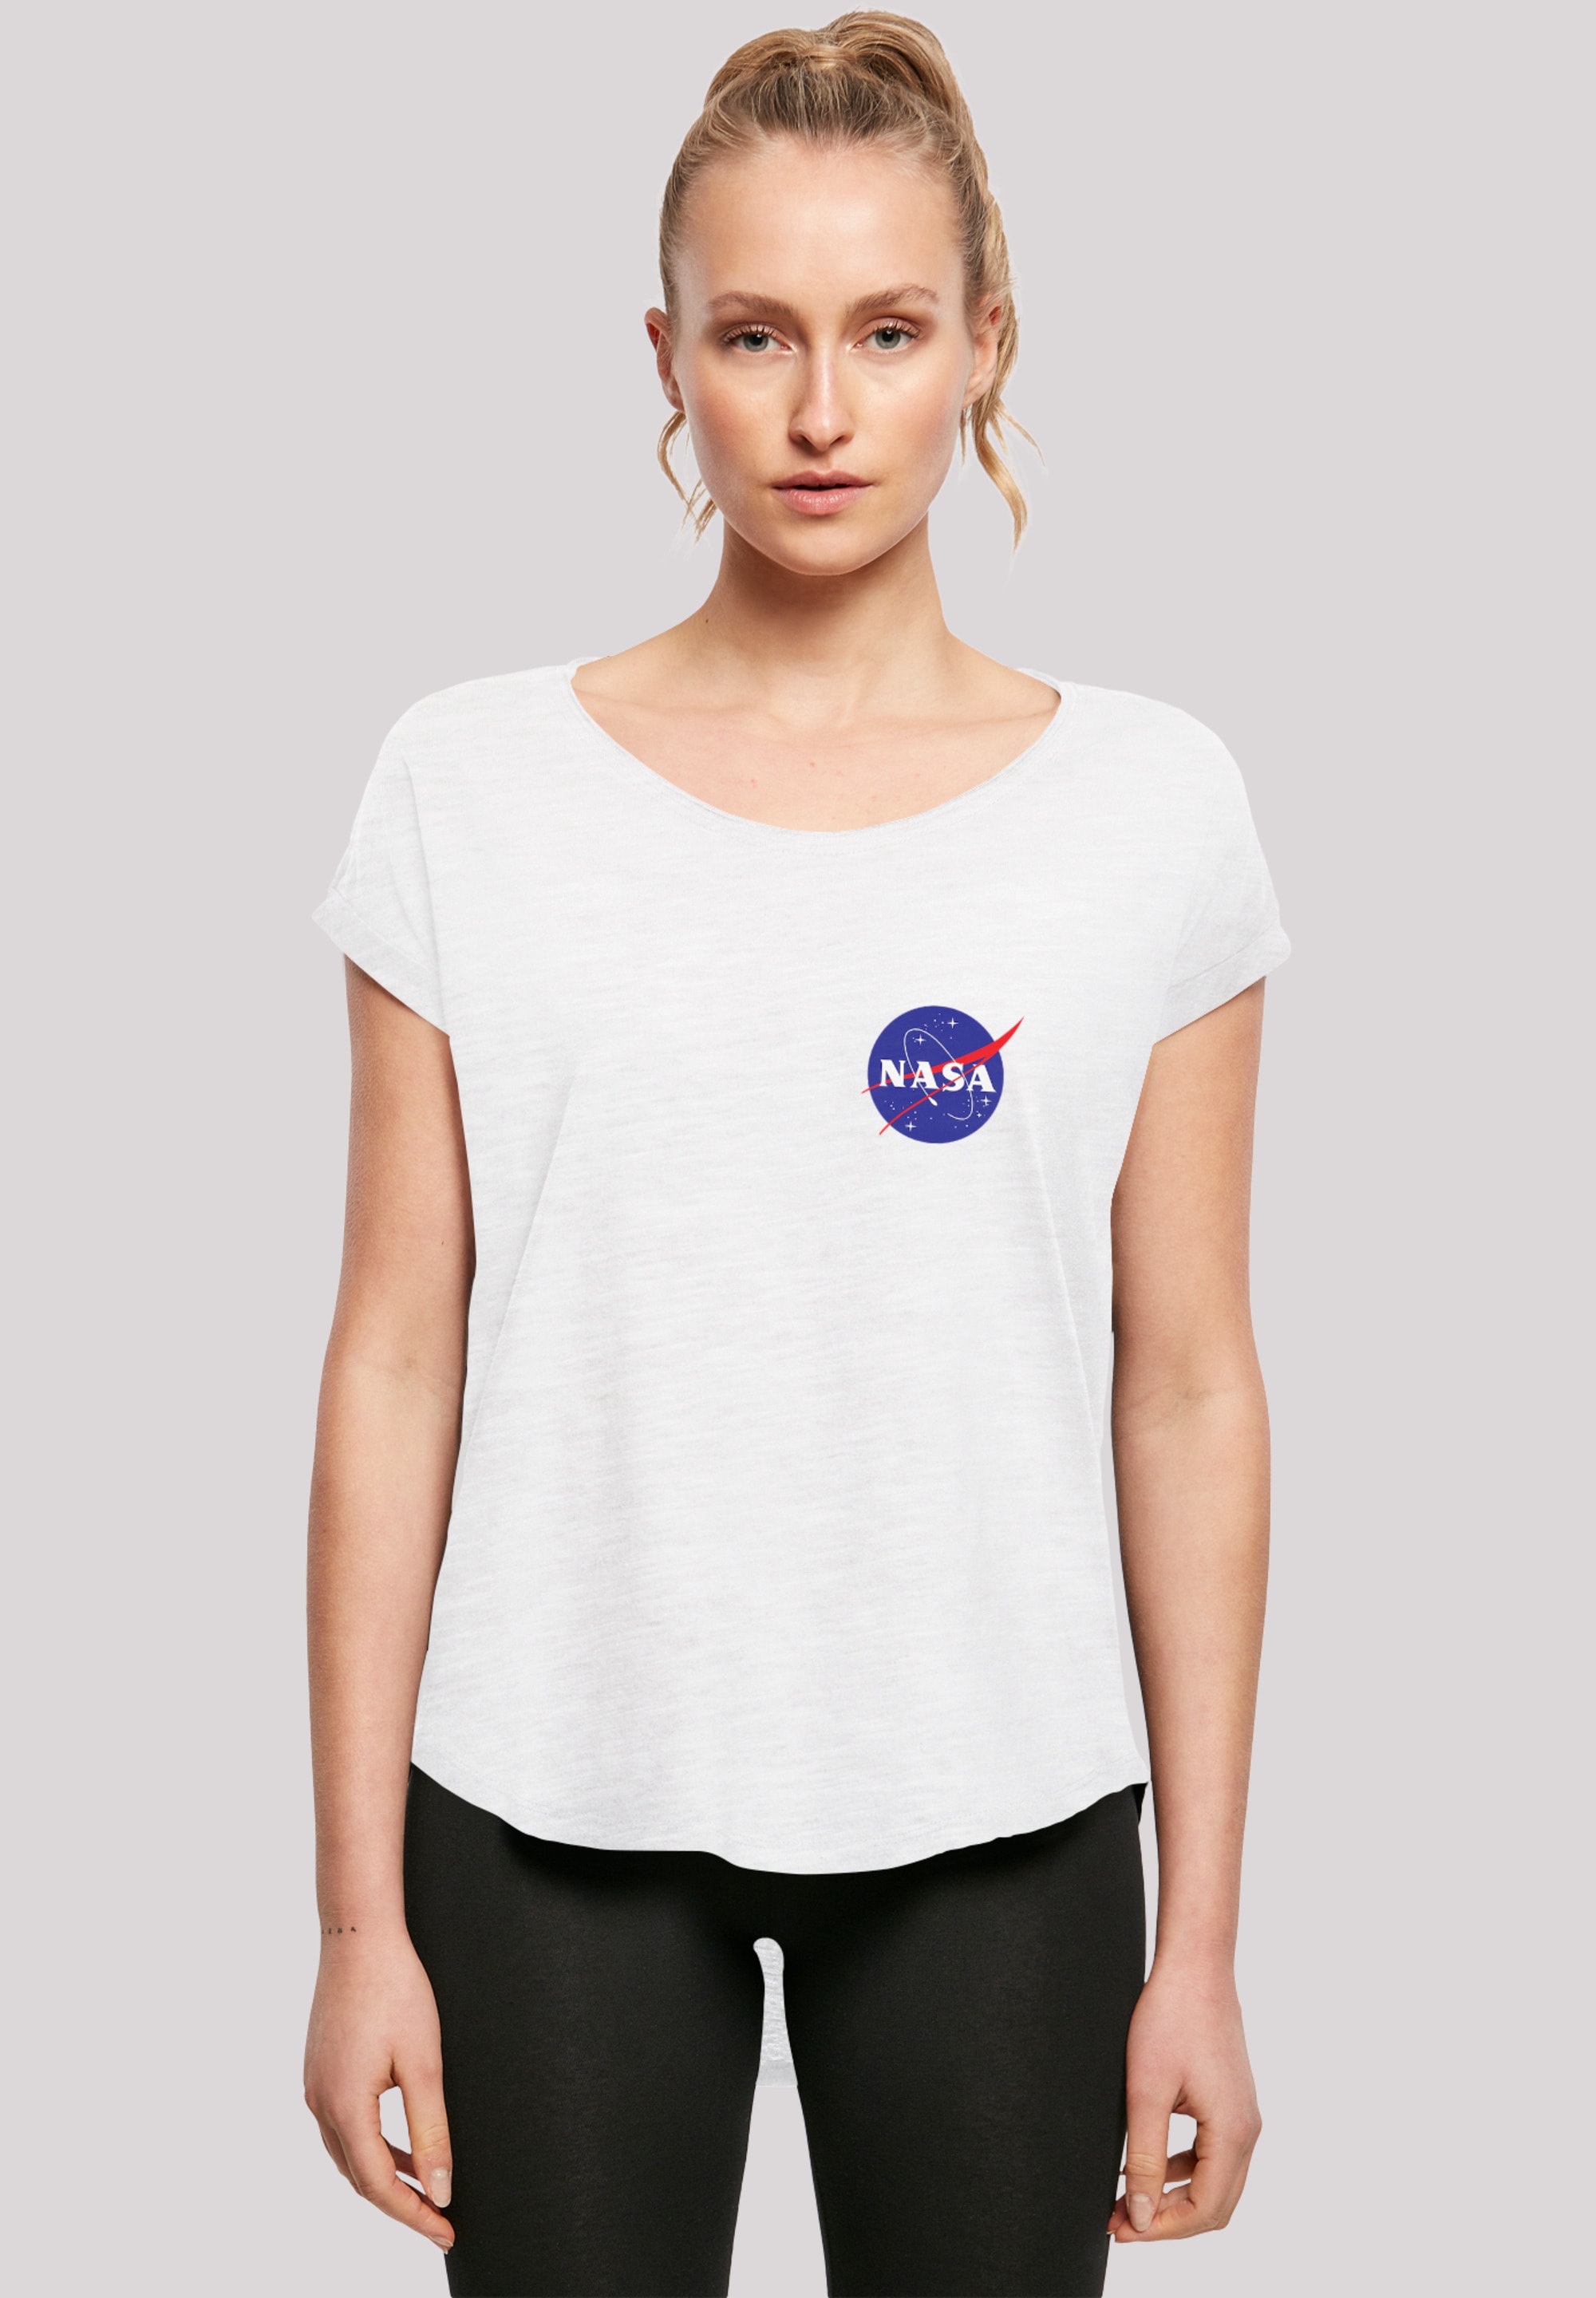 Logo kaufen | Merch,Lang,Longshirt,Bedruckt »Long Classic Cut Damen,Premium online T-Shirt T-Shirt NASA Insignia Chest BAUR F4NT4STIC White«,